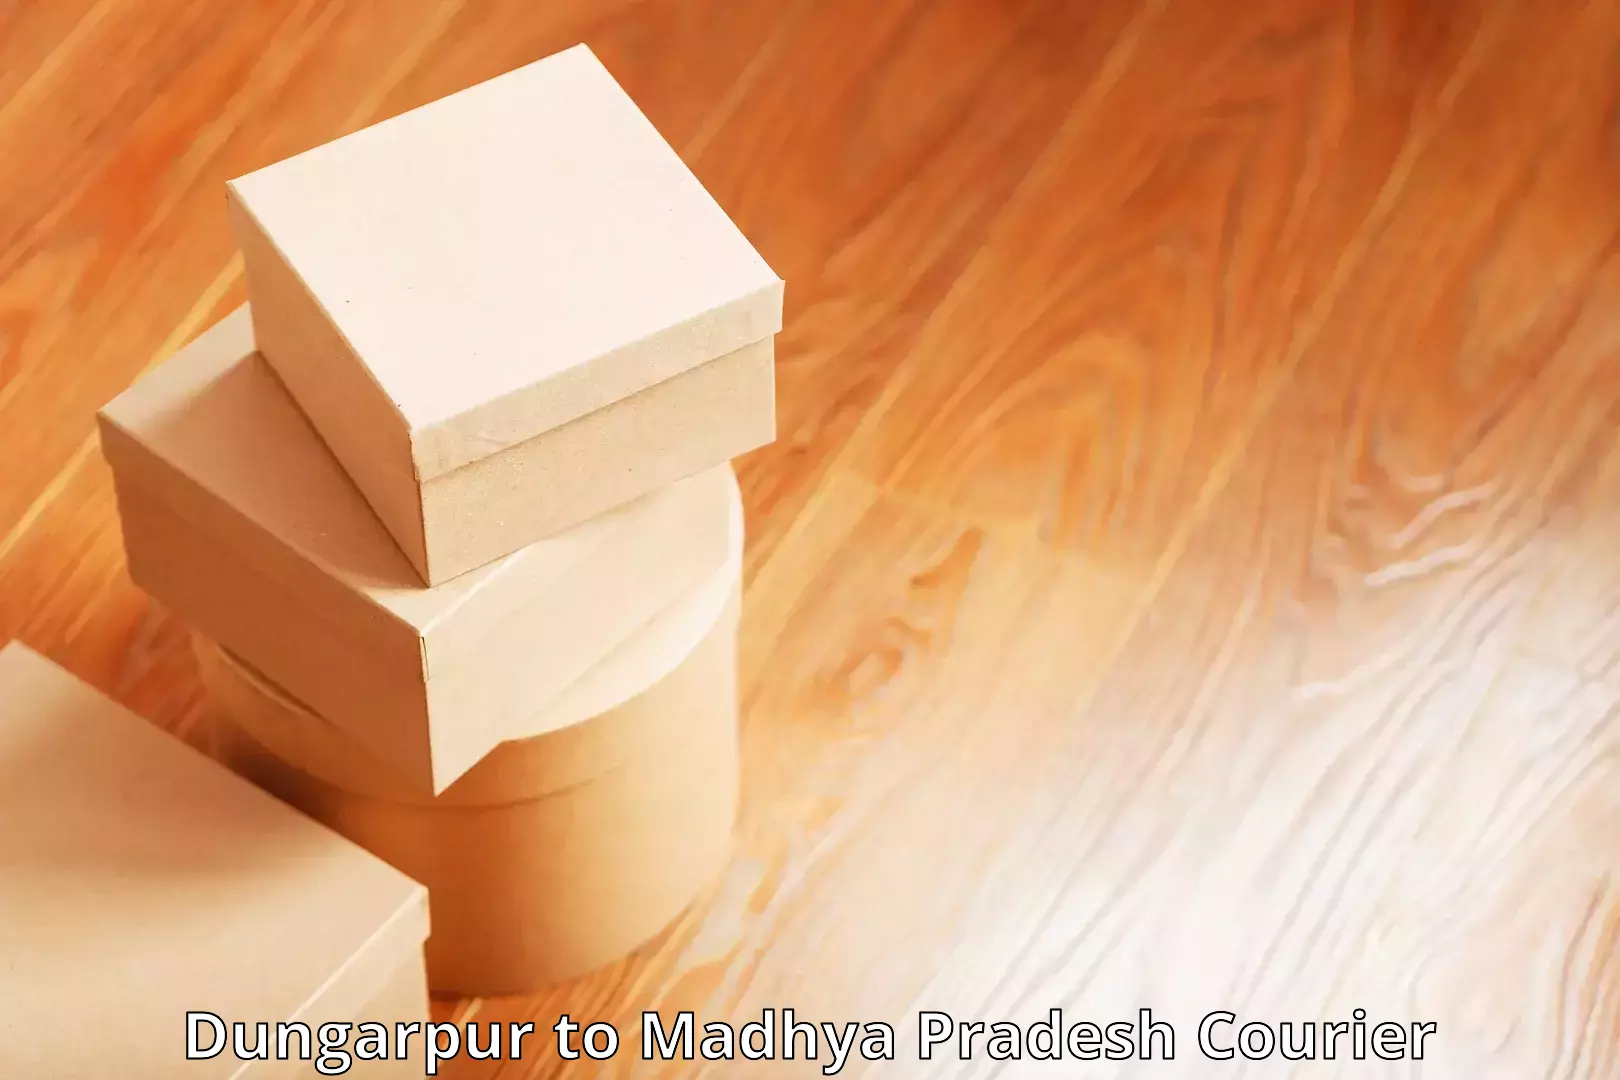 Optimized courier strategies Dungarpur to Madhya Pradesh